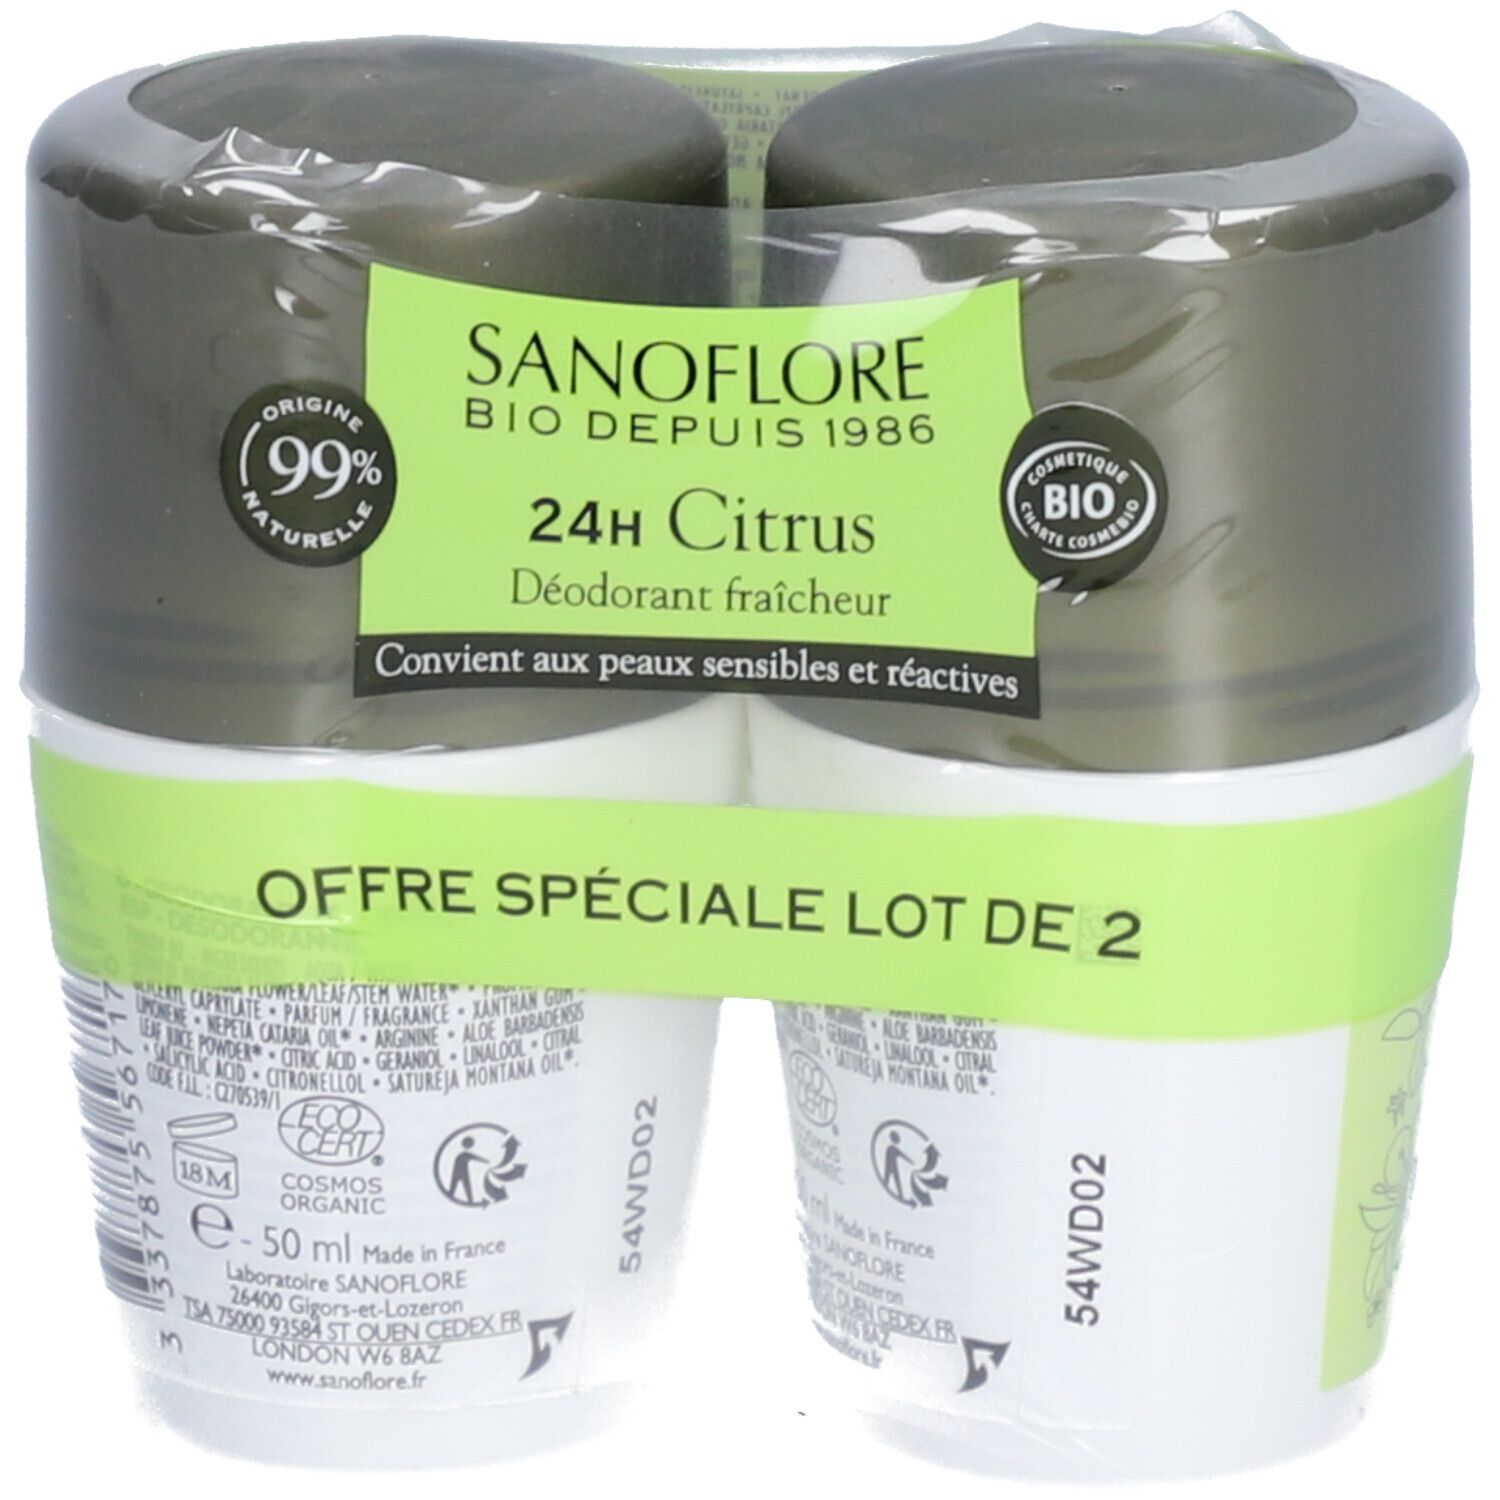 Sanoflore Déodorant Citrus efficacité 24h certifié bio